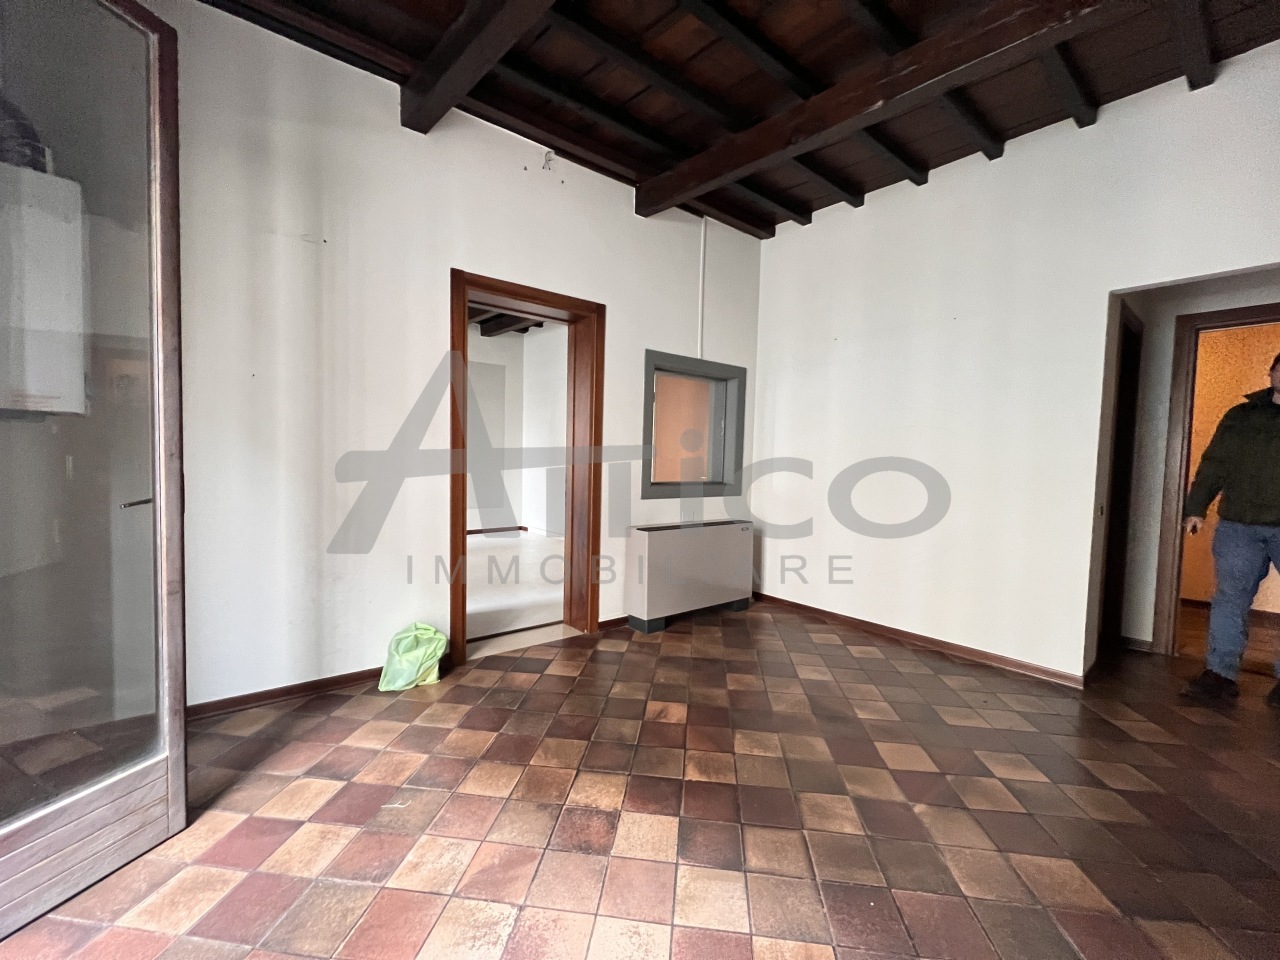 Ufficio / Studio in affitto a Rovigo, 25 locali, prezzo € 500 | PortaleAgenzieImmobiliari.it